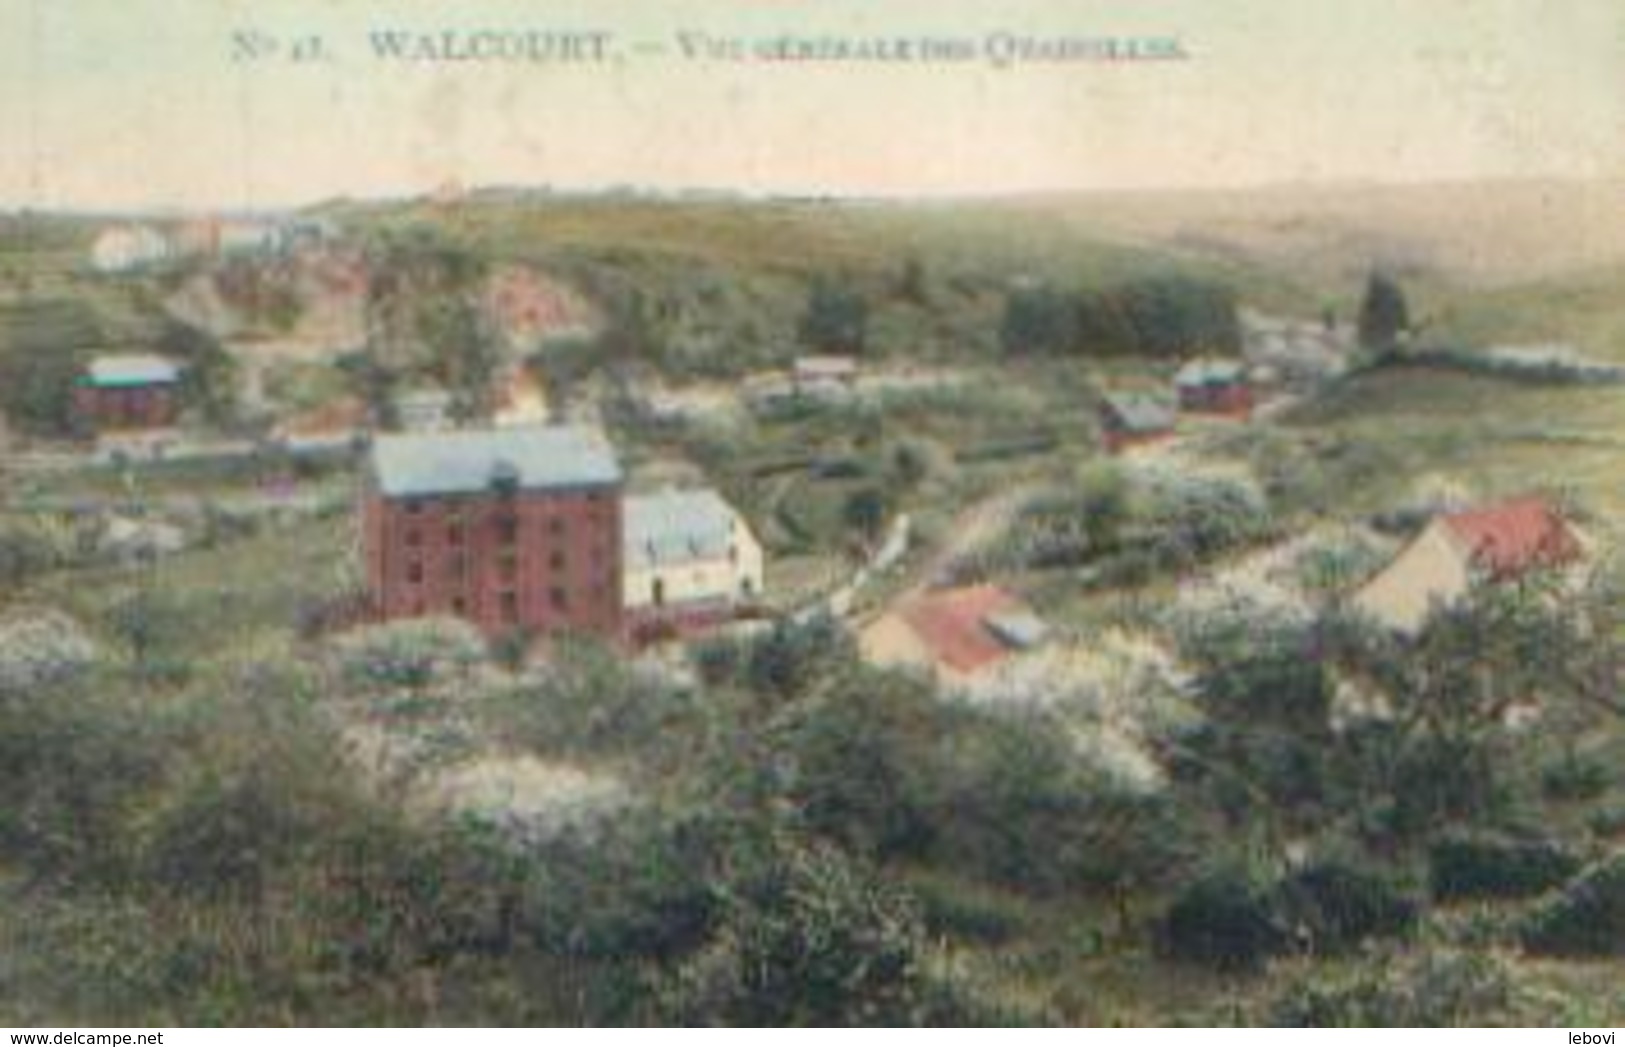 WALCOURT « Vue Générale Des Quairelles » - Phototypie Marco Marcovici, Bxl (1911) - Walcourt